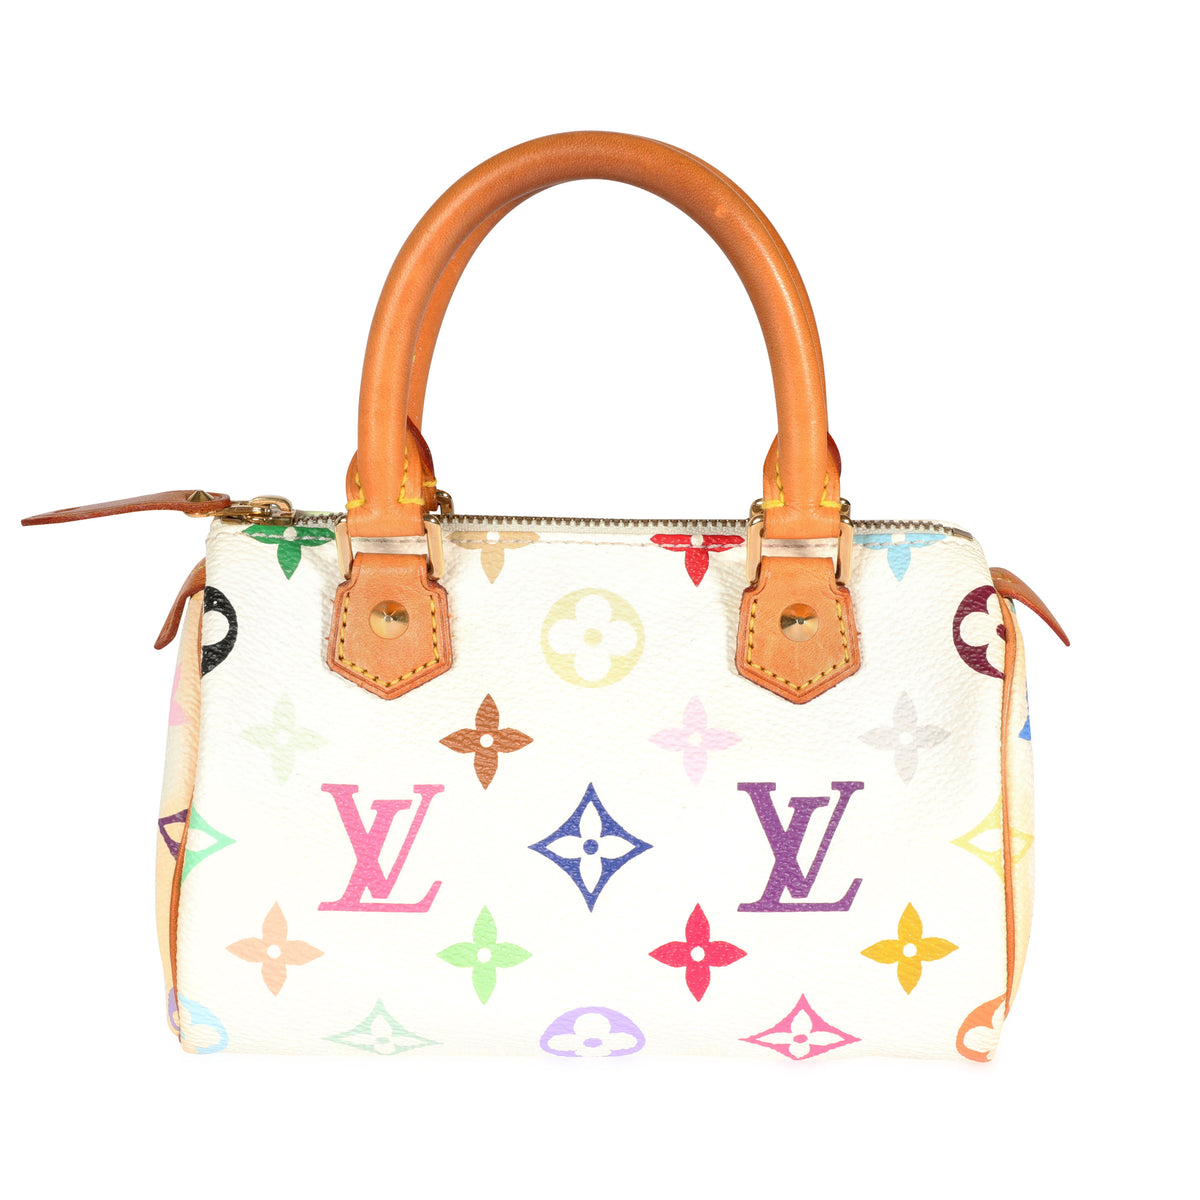 Louis Vuitton x Takashi Murakami Monogram Cherry Speedy 25 Handbag Brown   eBay